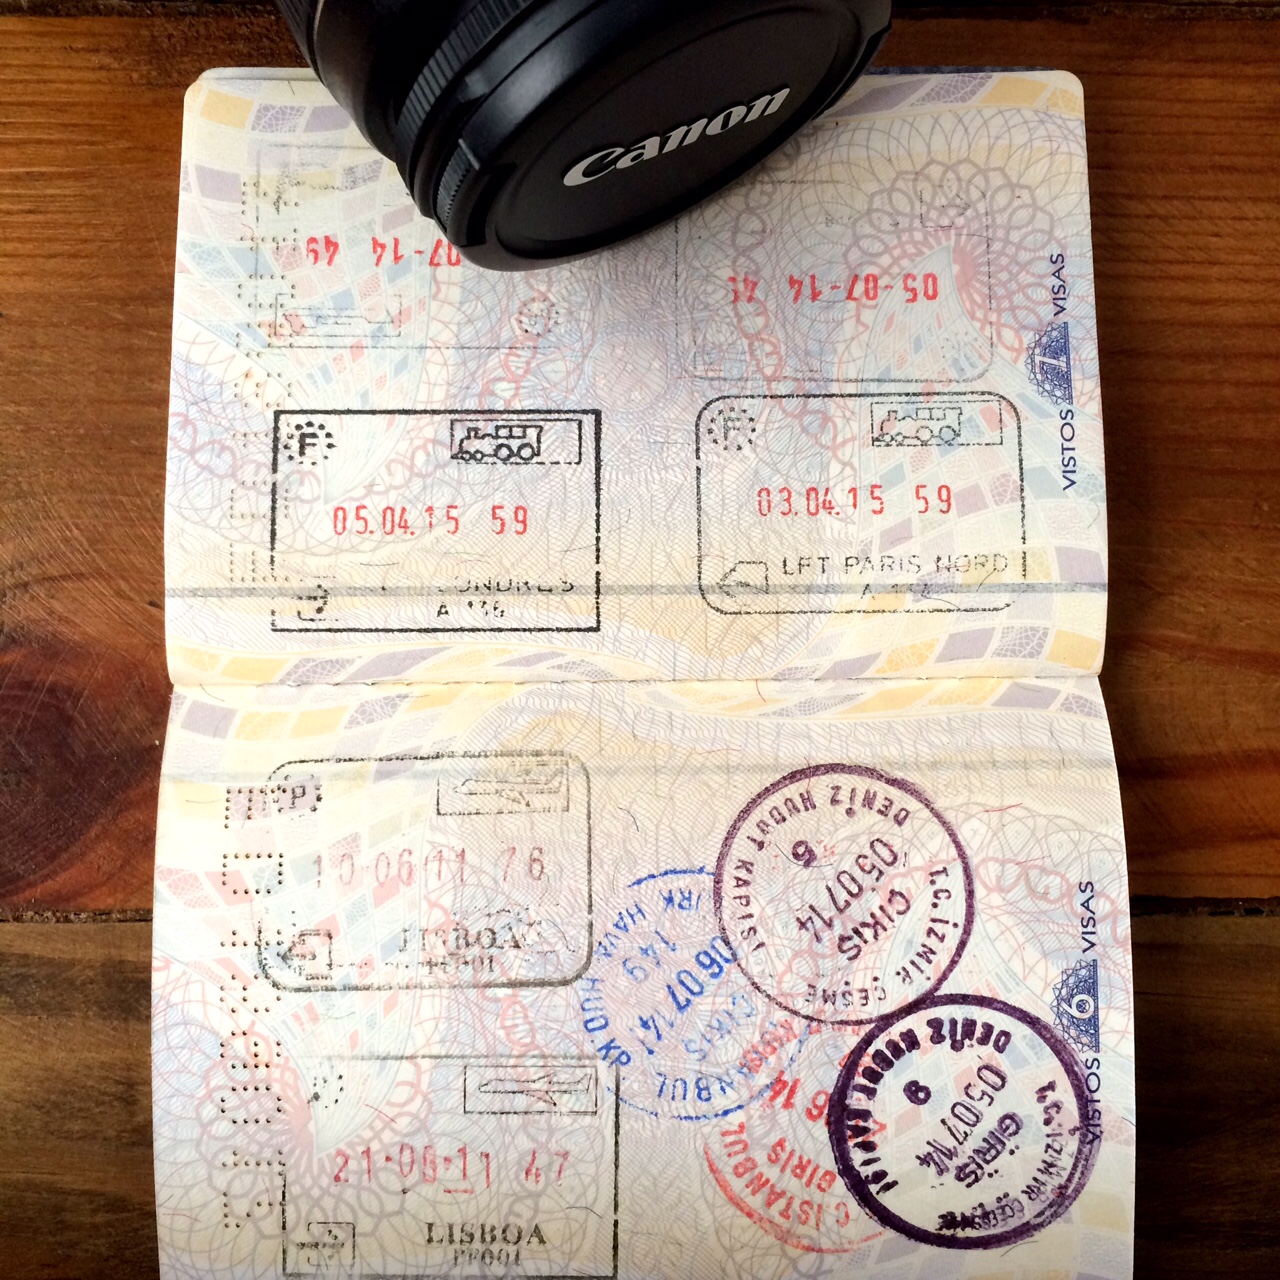 6-Novo-passaporte-brasileiro.jpg